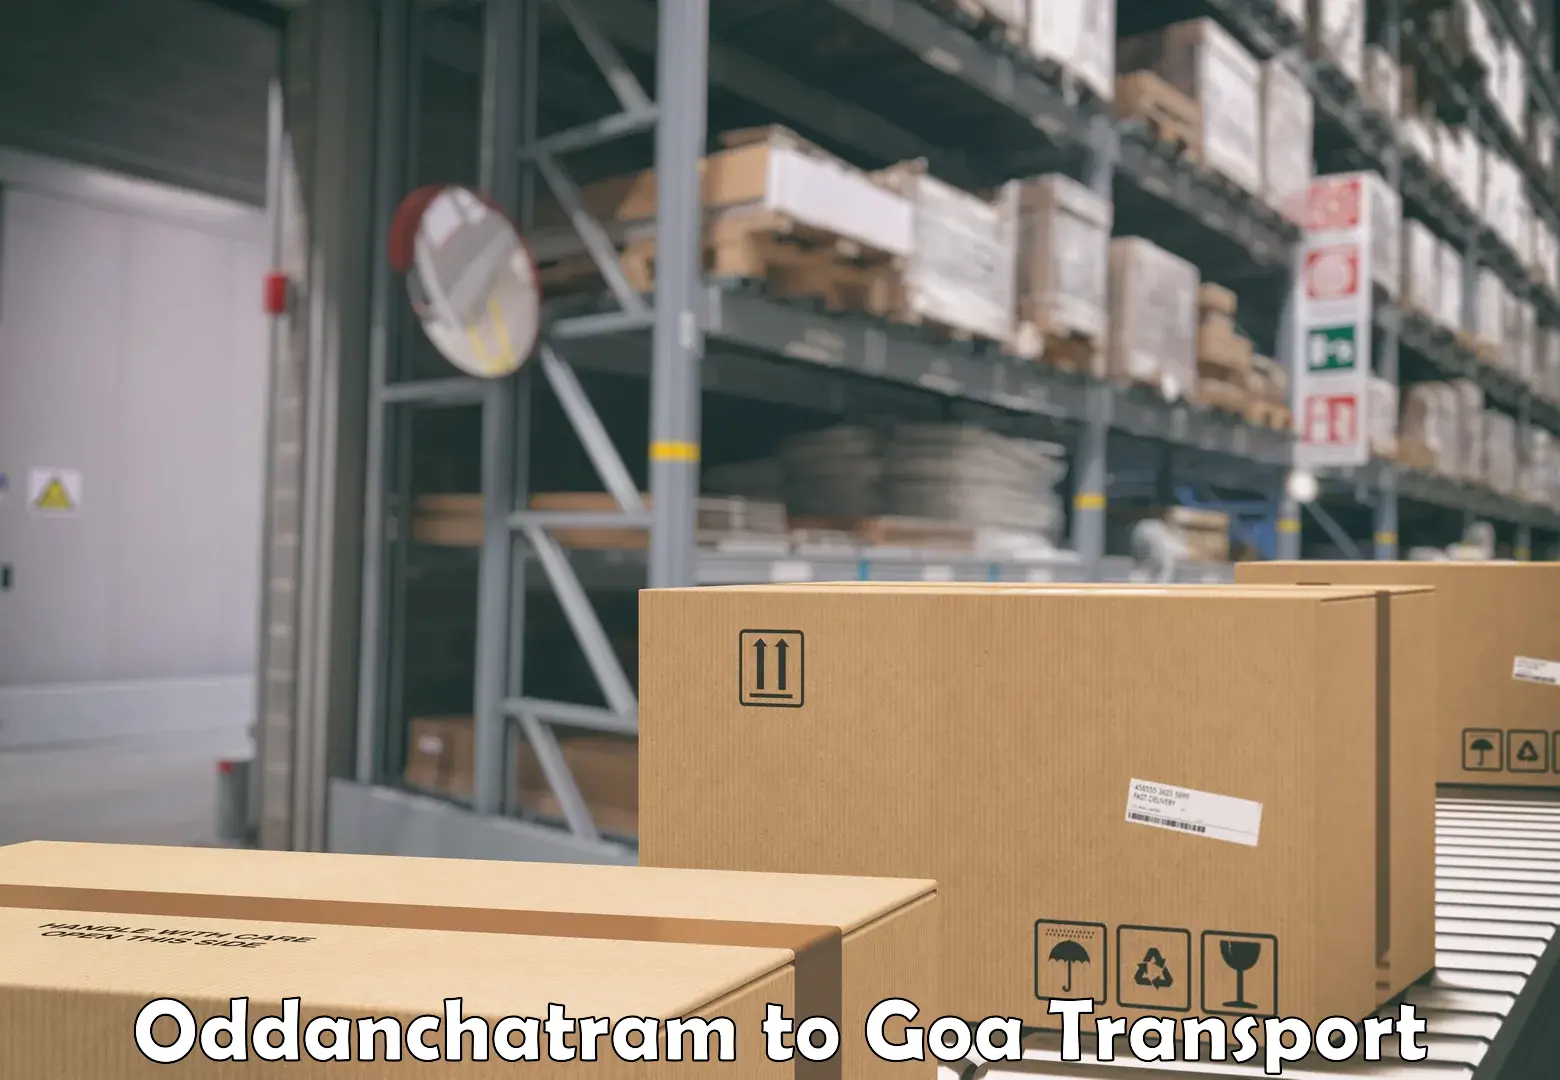 Pick up transport service Oddanchatram to Goa University